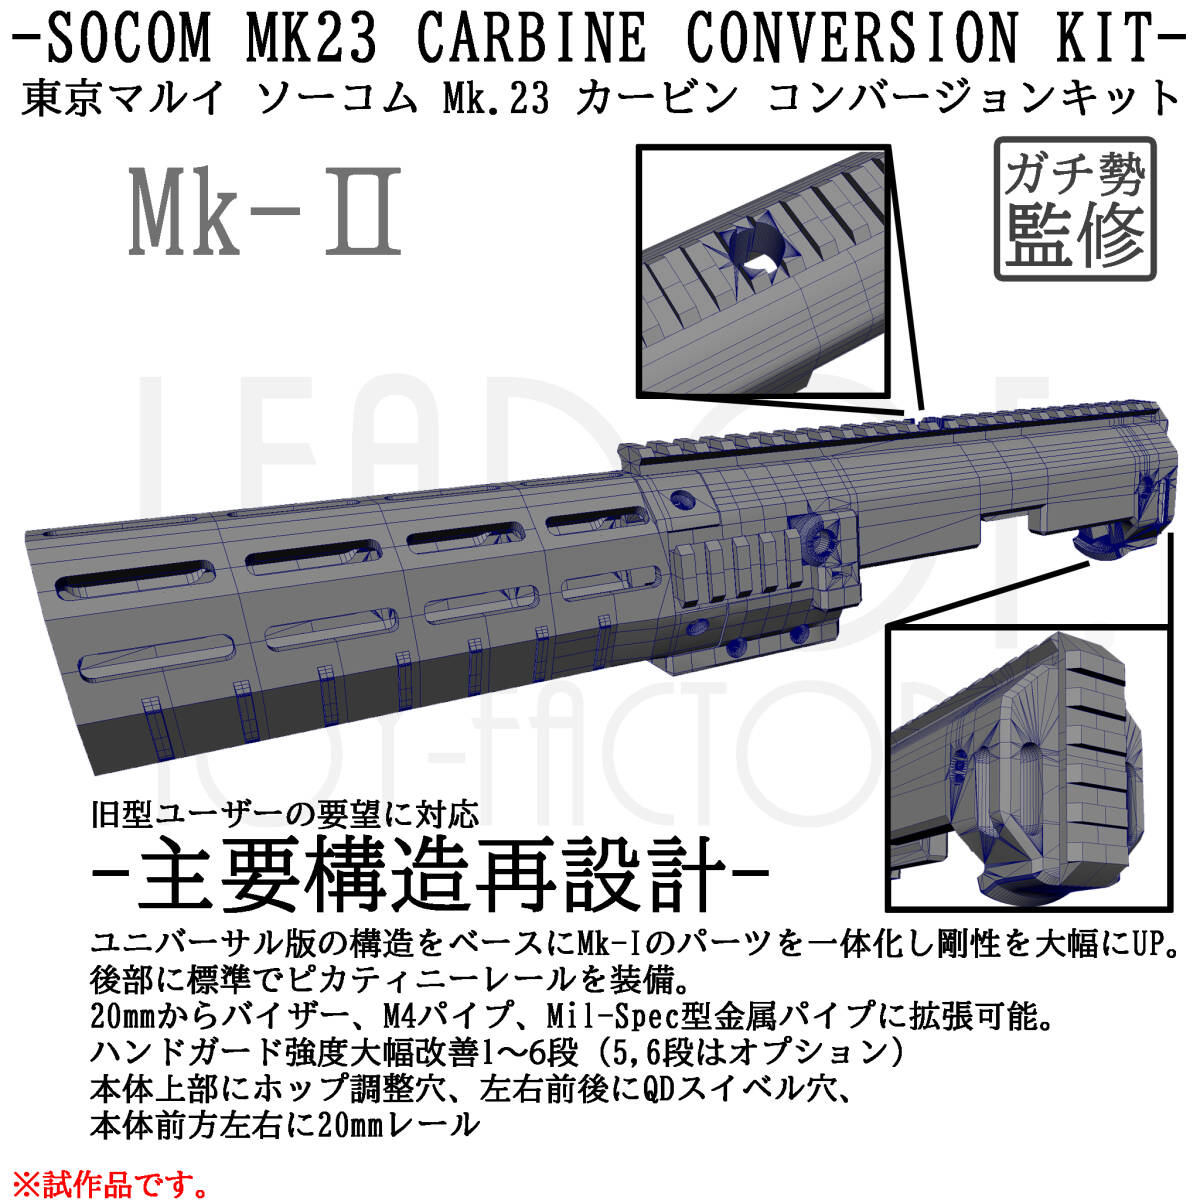 東京マルイ ソーコム Mk23 カービン コンバージョンキット Mk-II（本体のみ）_画像1